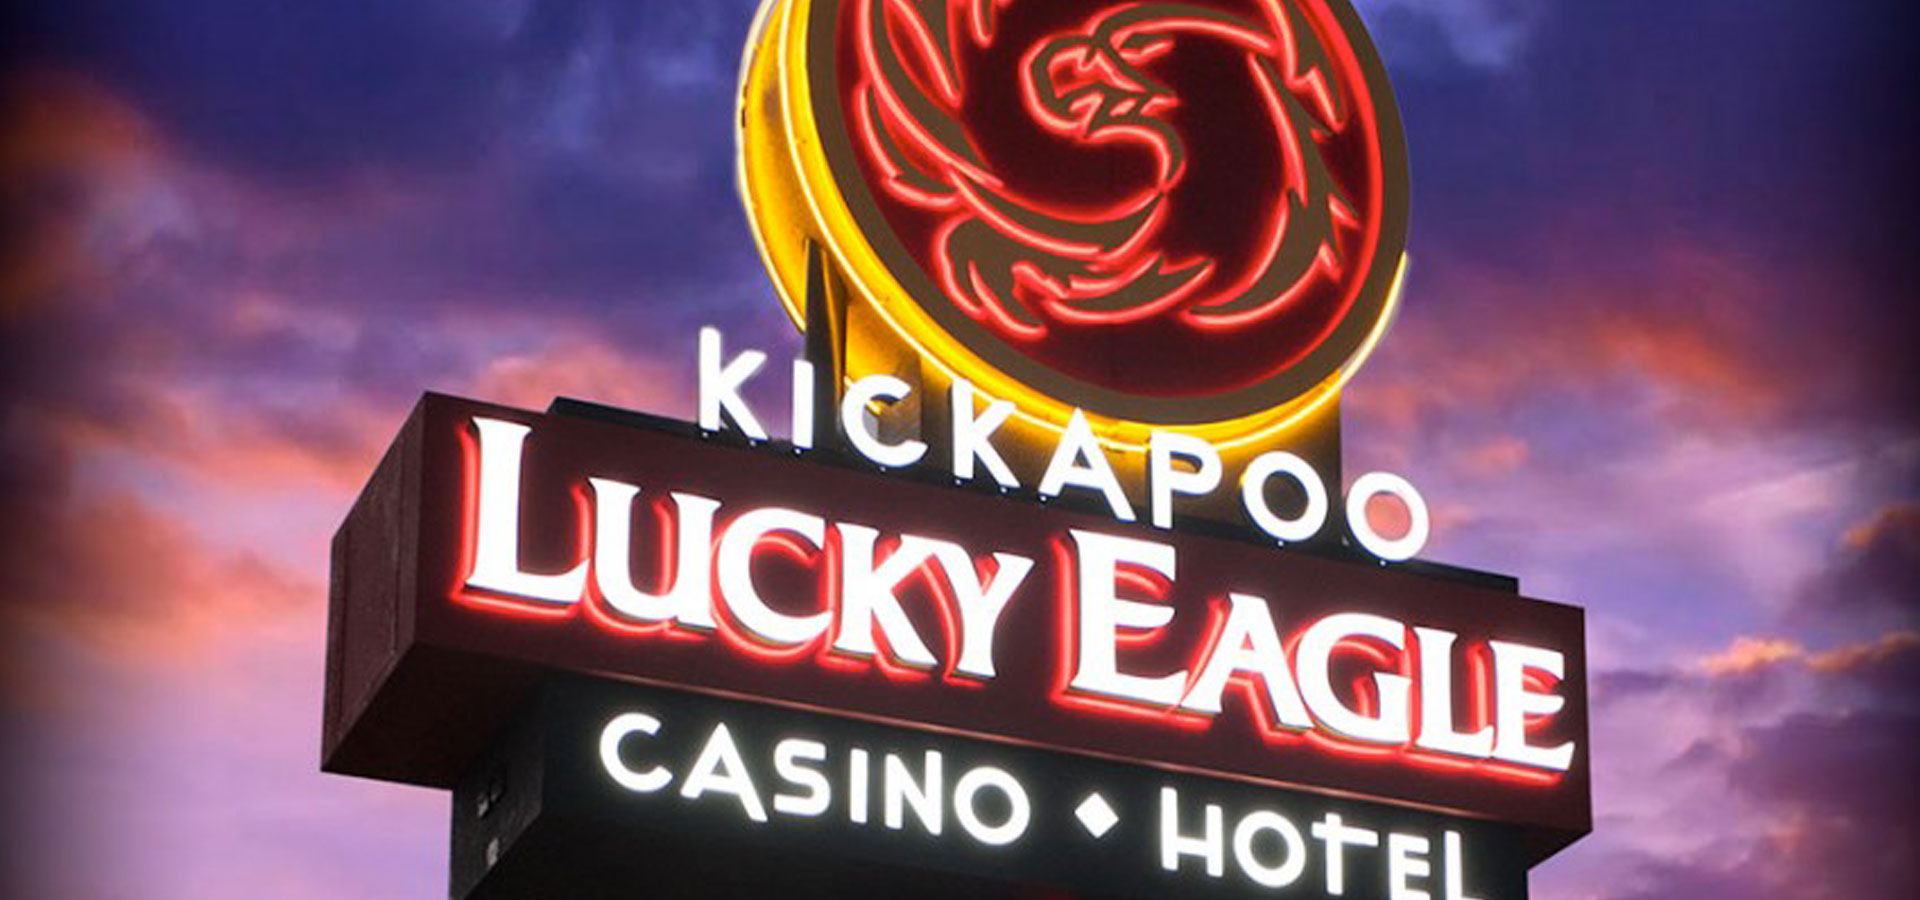 Kickapoo Lucky Eagle Casino Hotel womenwhowandertexas com